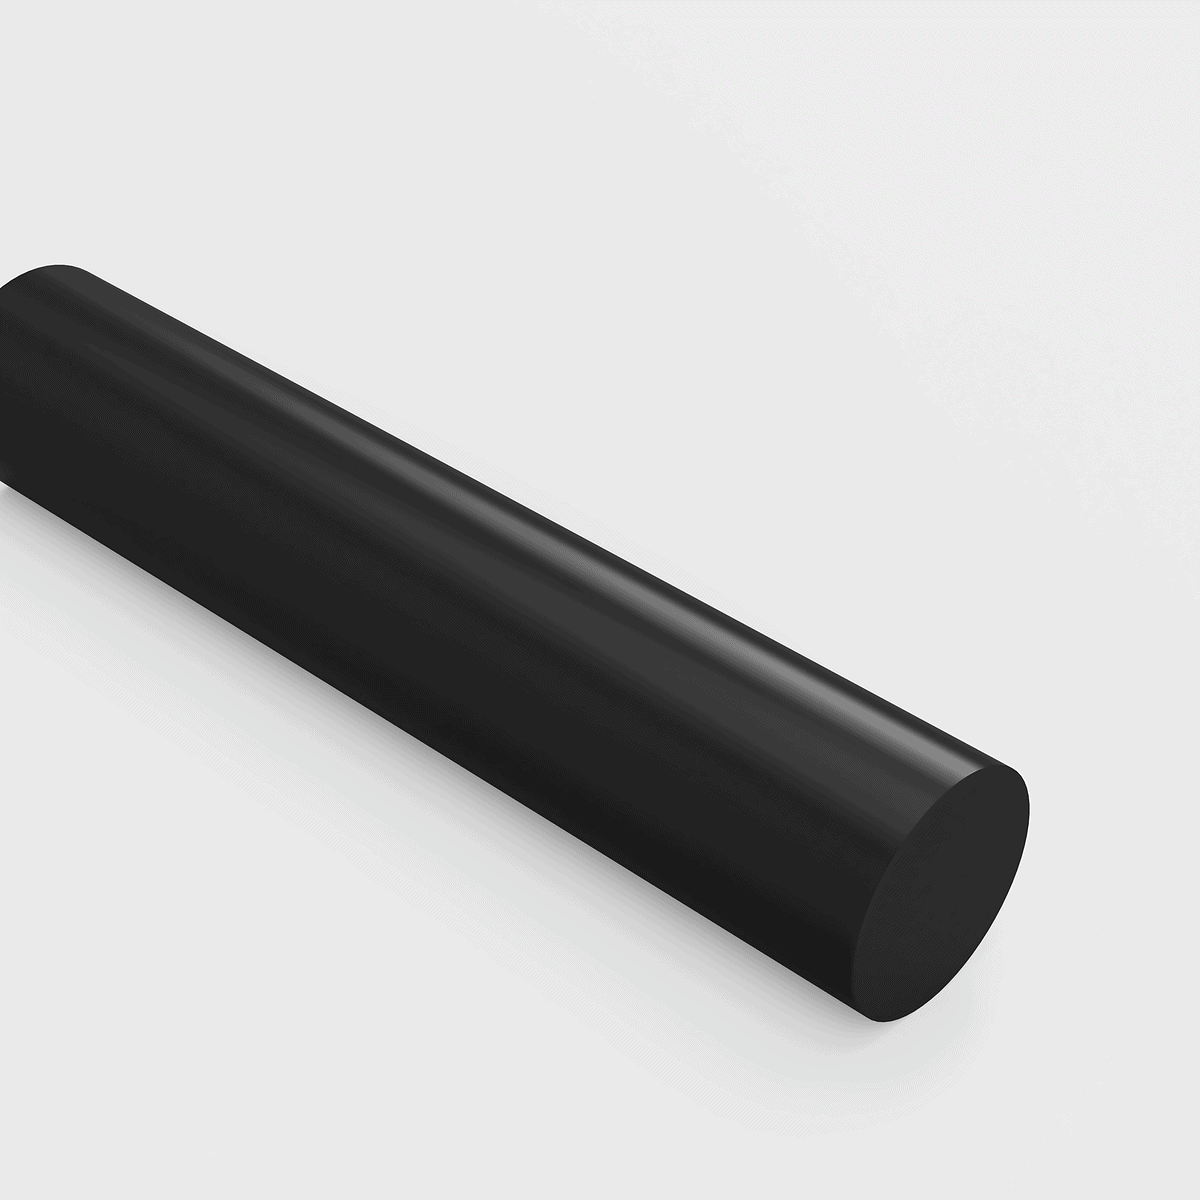 Plastic rod black